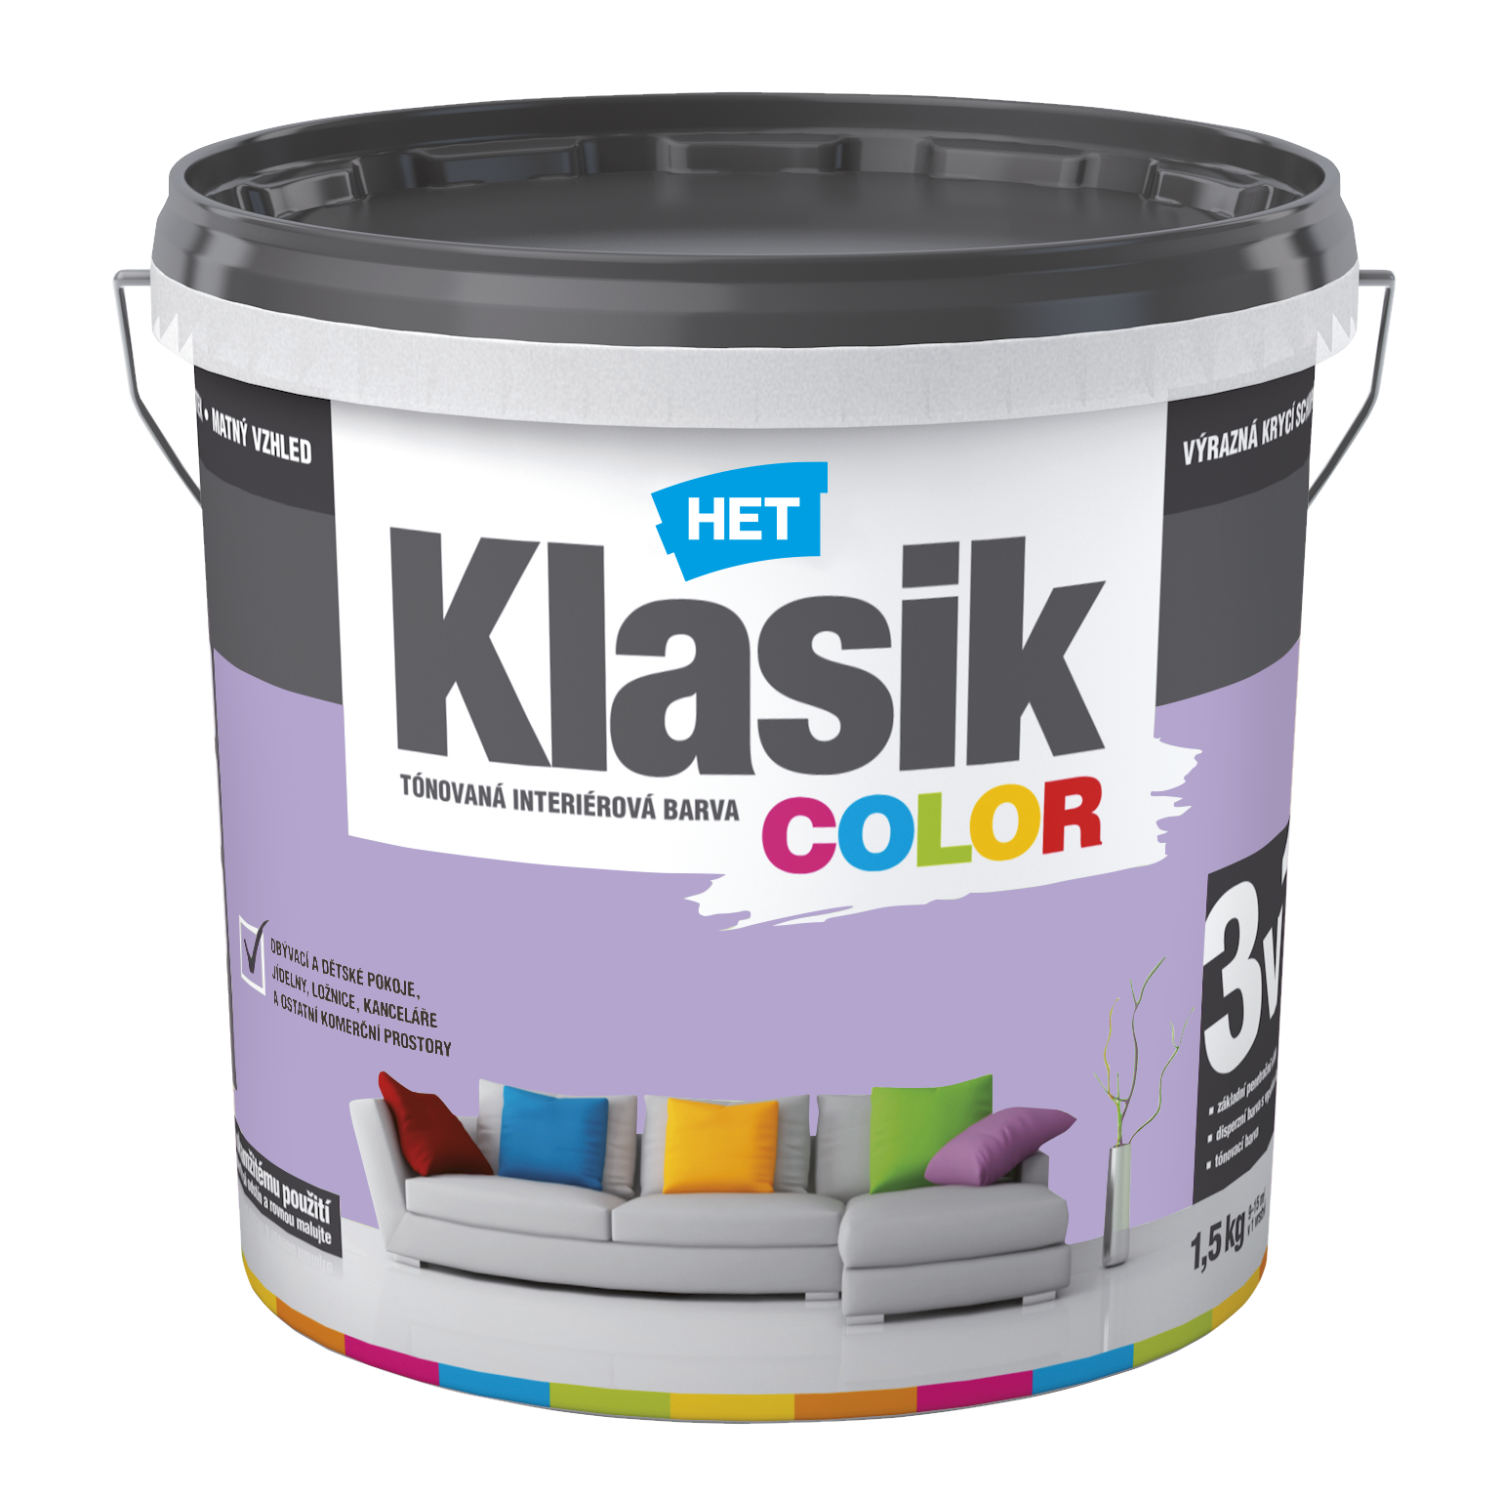 HET Klasik COLOR tónovaná interiérová akrylátová disperzná oteruvzdorná farba 1,5 kg, KC0317 - purpurový